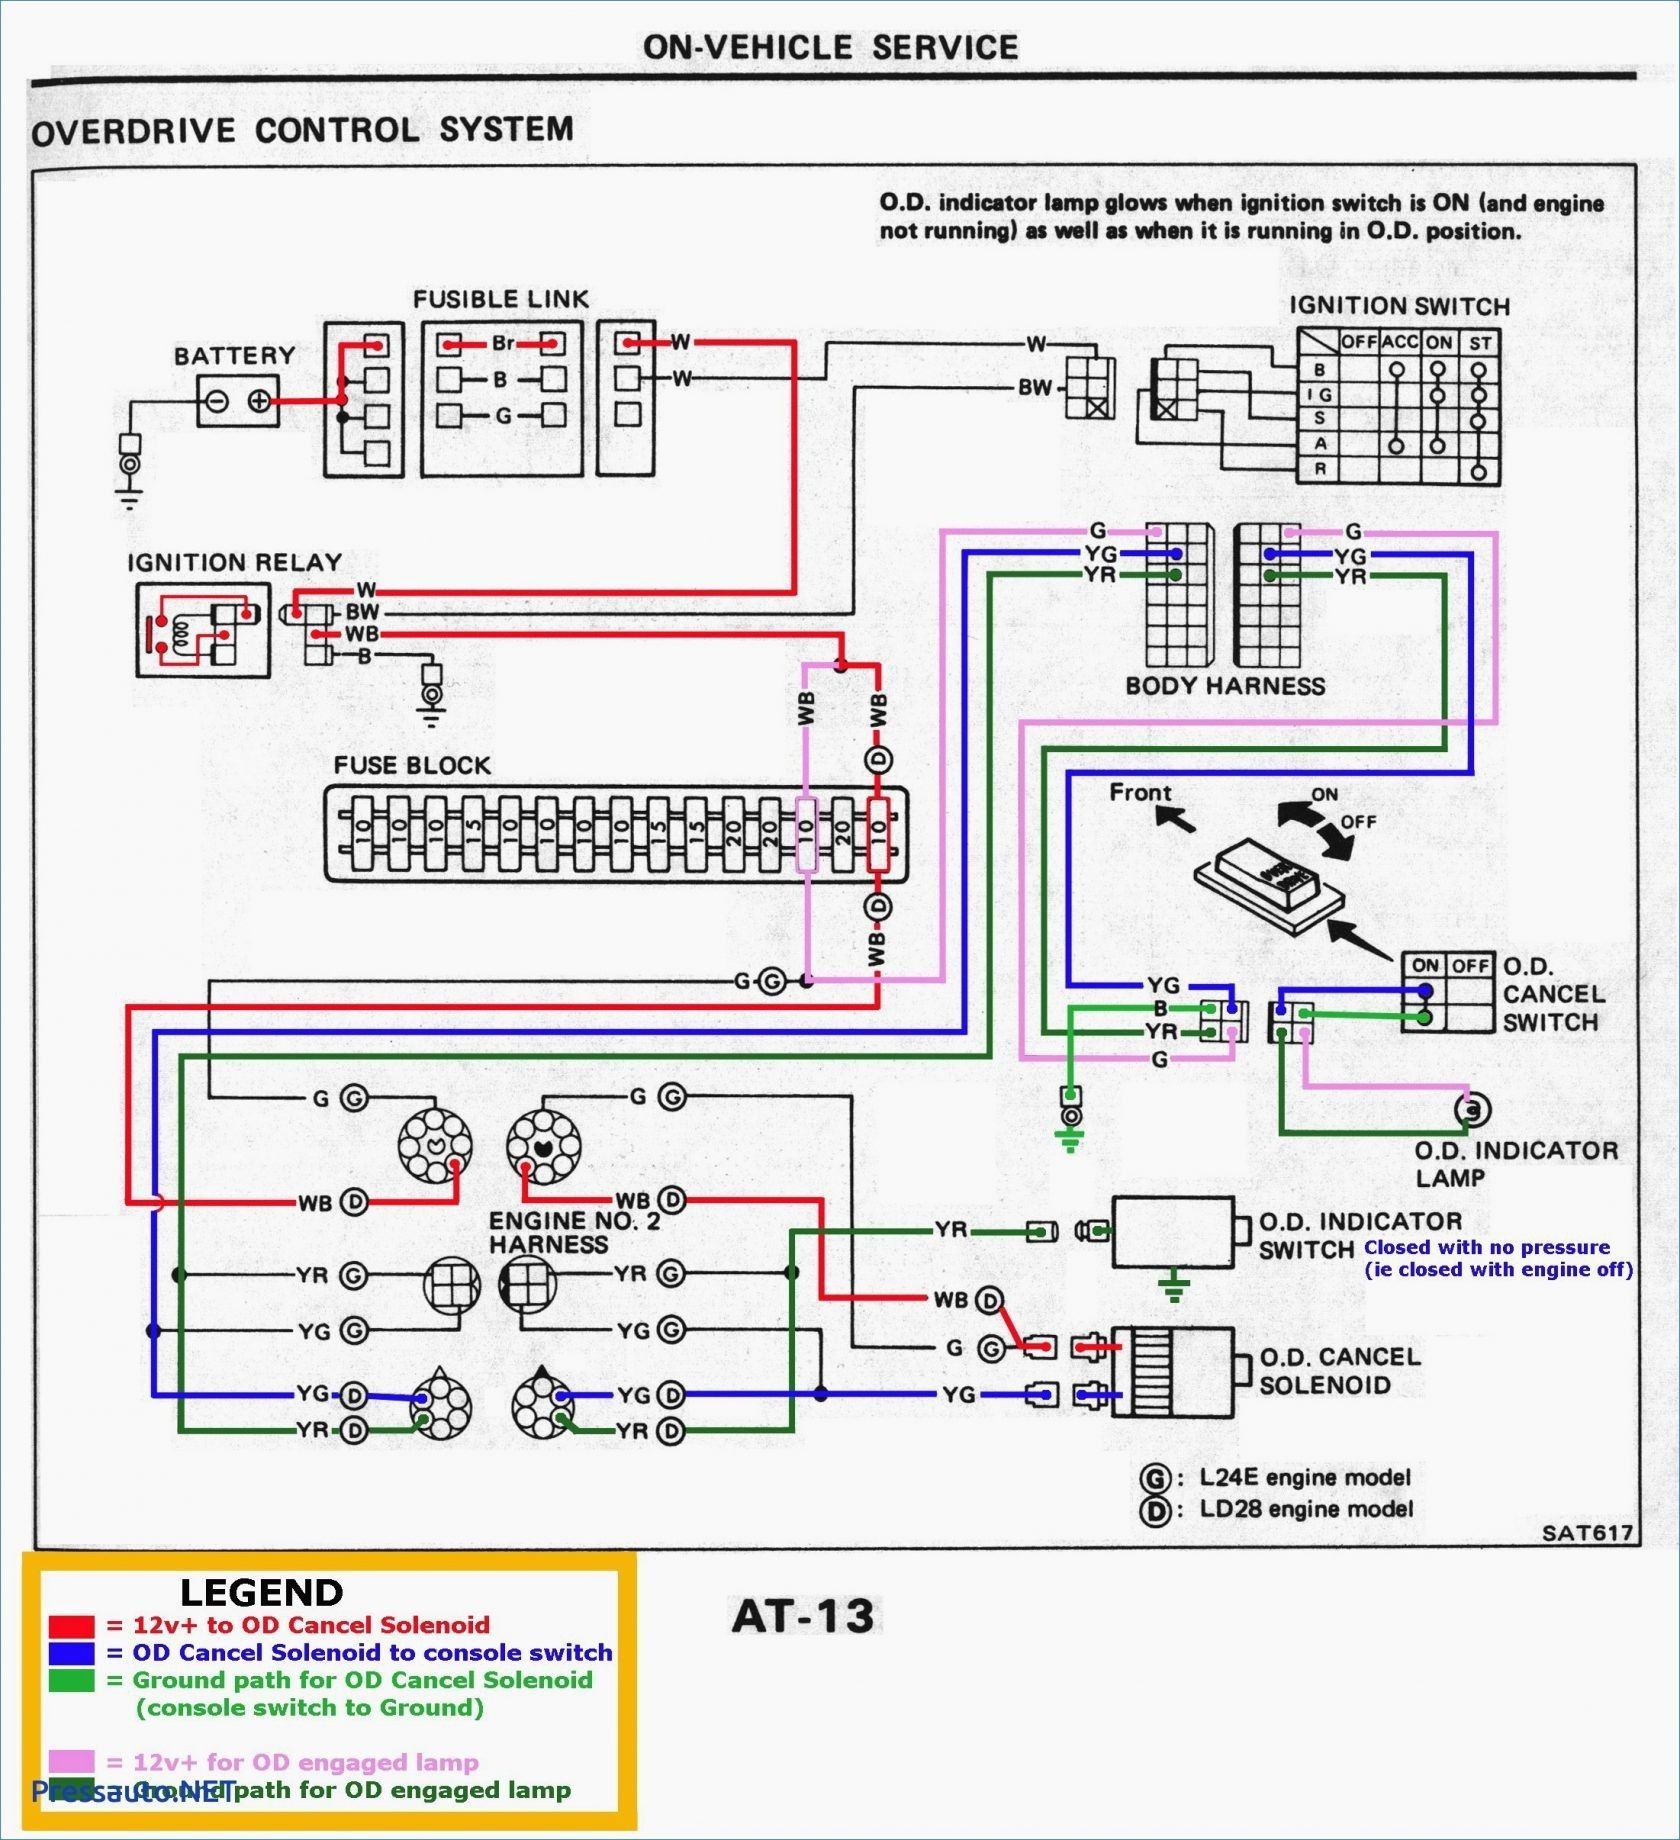 1996 Geo Prizm Engine Diagram 1998 Geo Tracker Wiring Diagram Wiring Diagram toolbox Of 1996 Geo Prizm Engine Diagram